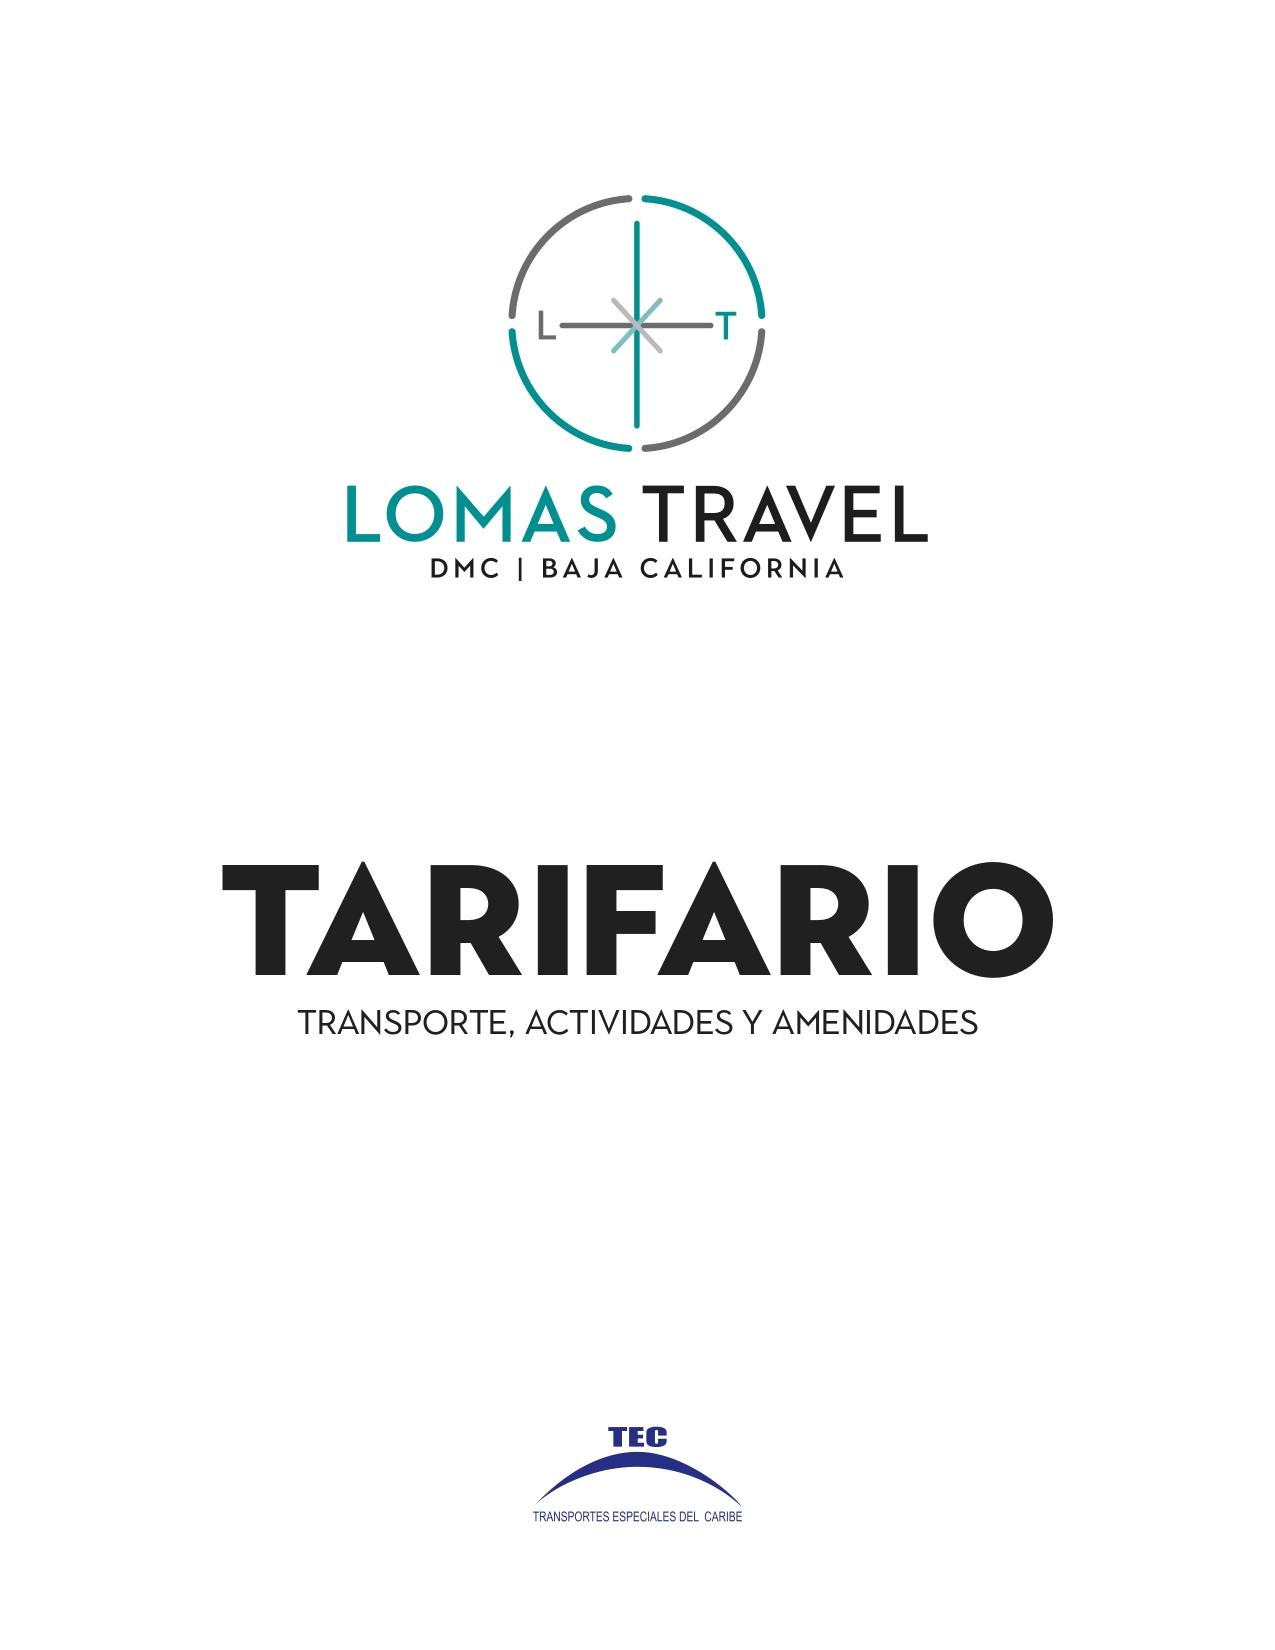 Lomas Travel DMC | Baja California